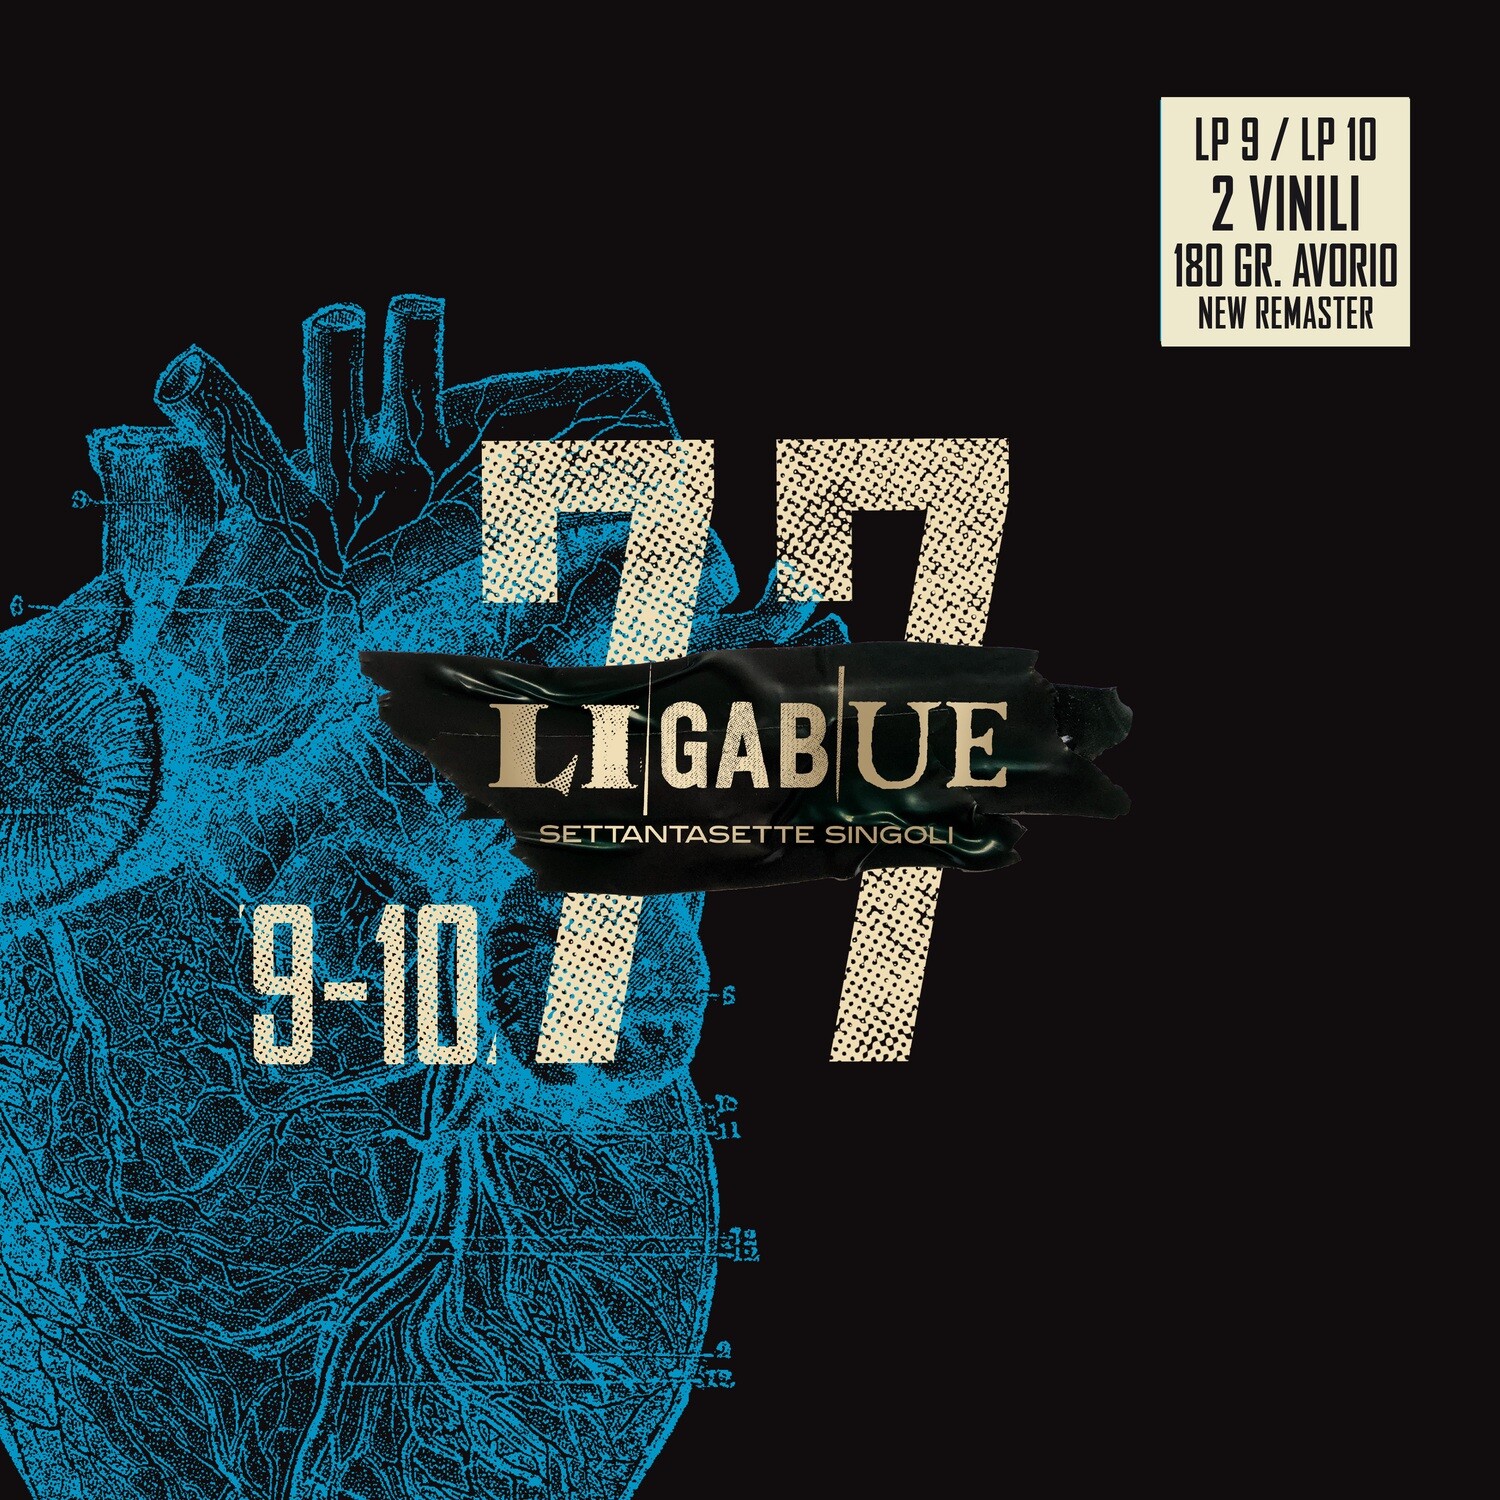 Ligabue - Settantasette Singoli 9-10 (2 LP Avorio) | Vendita dischi, cd e  vinili originali e nuovi anche online